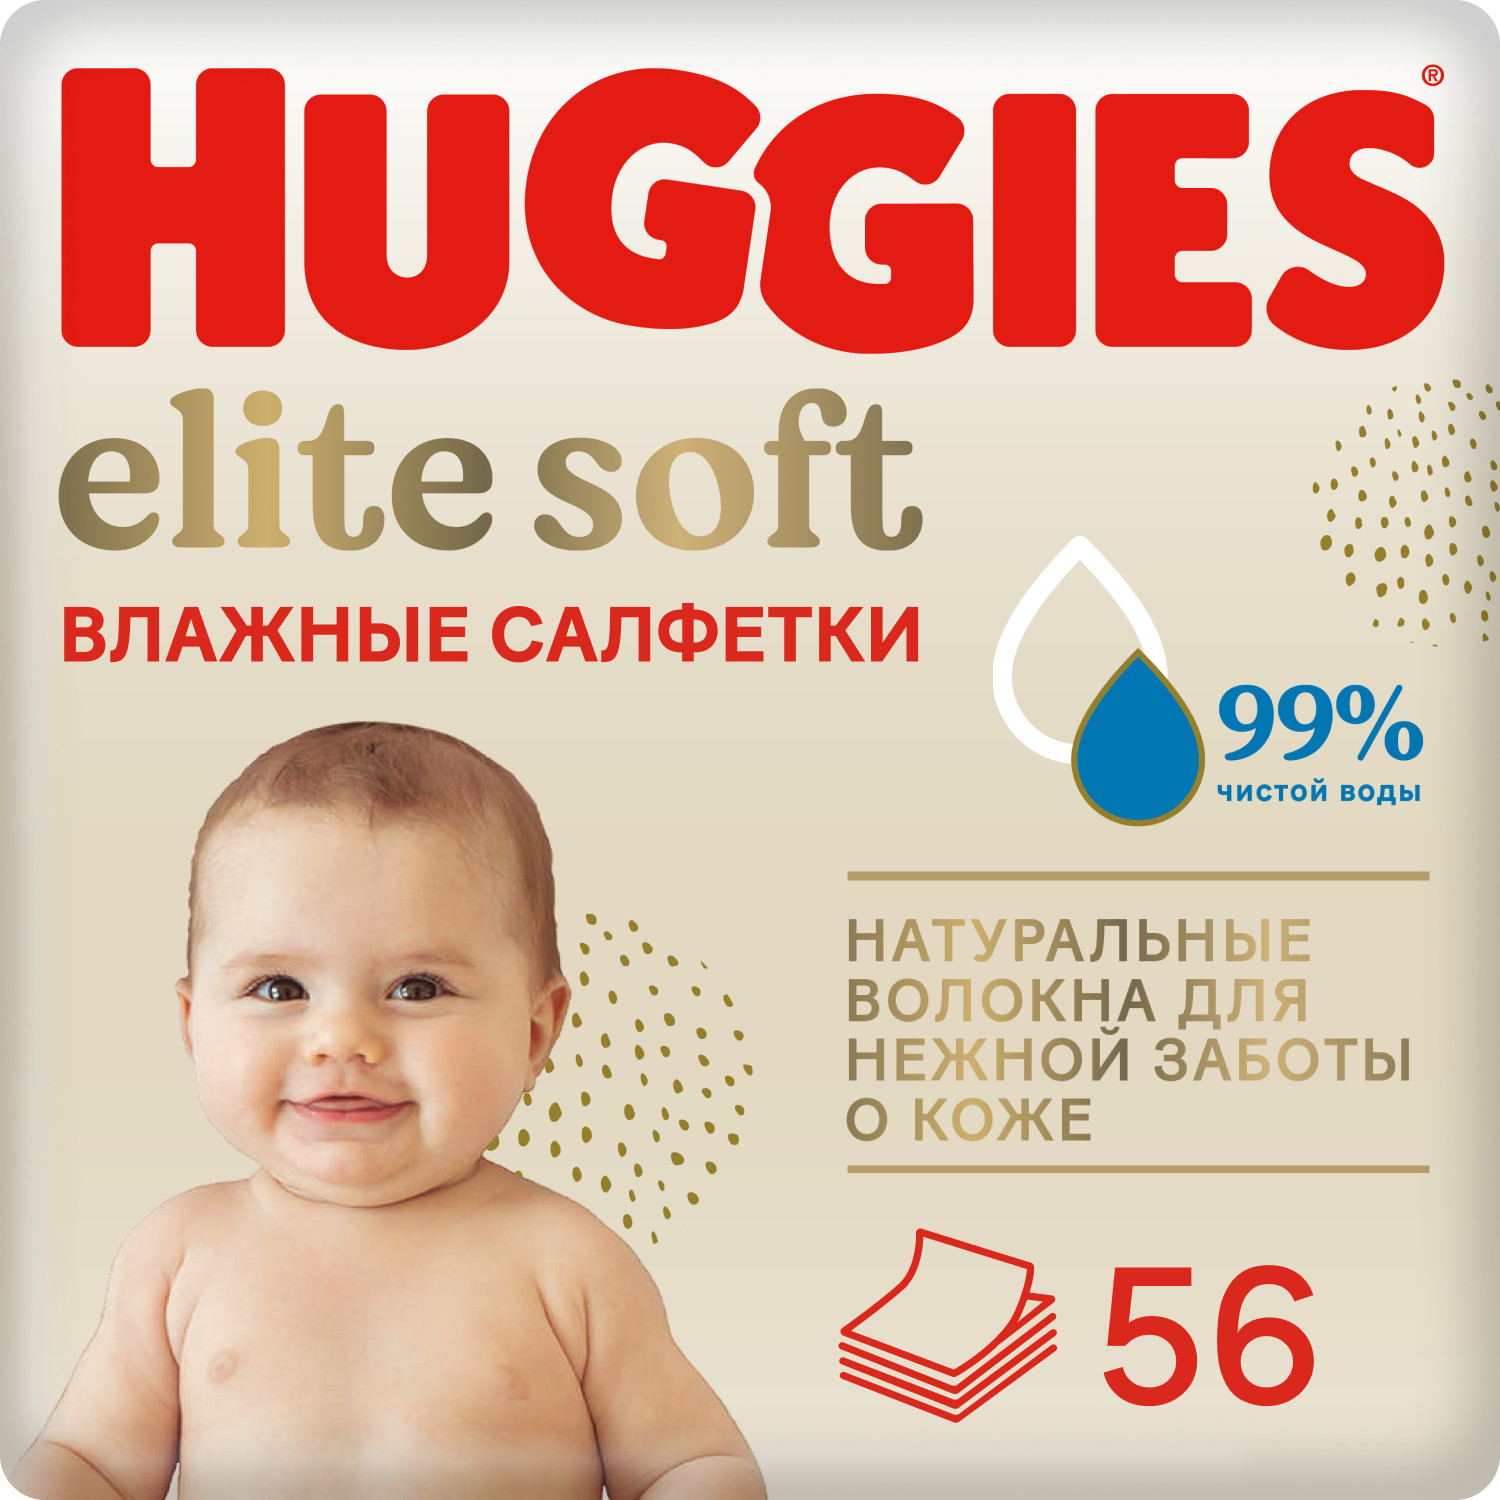 Купить Хаггис салфетки влажные для детей Элит Софт №56, KIMBERLY-CLARK